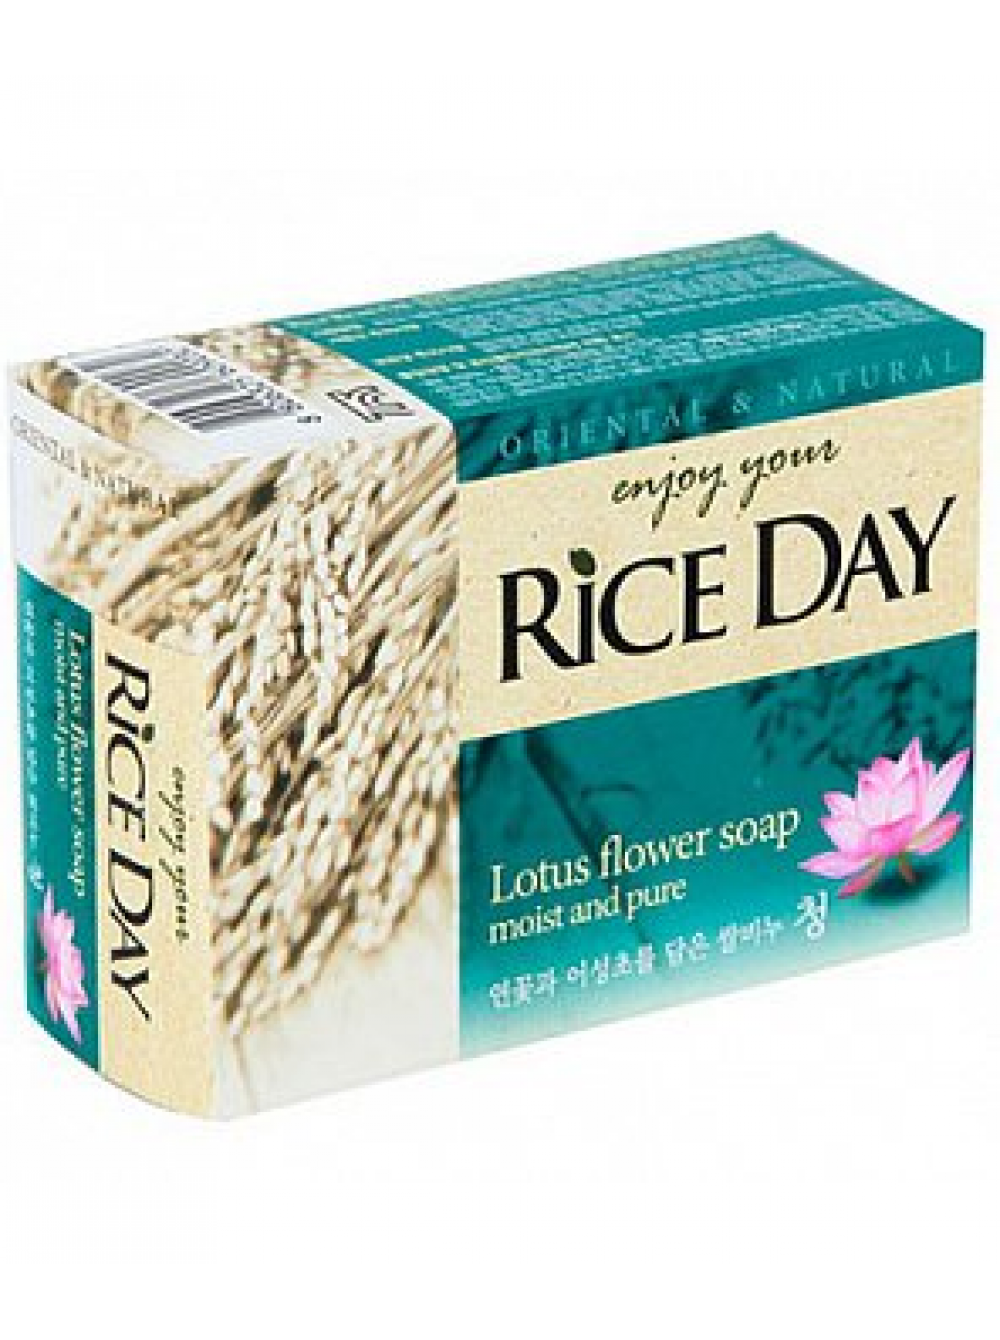 Rice day. Туалетное мыло "Rice Day" с лотосом, 100 г. Мыло твердое CJ Lion "Rice Day" с рисовыми отрубями, 100 гр.. Rice Day мыло с экстрактом лотоса. Мыло Rice Day с лотосом 100г.